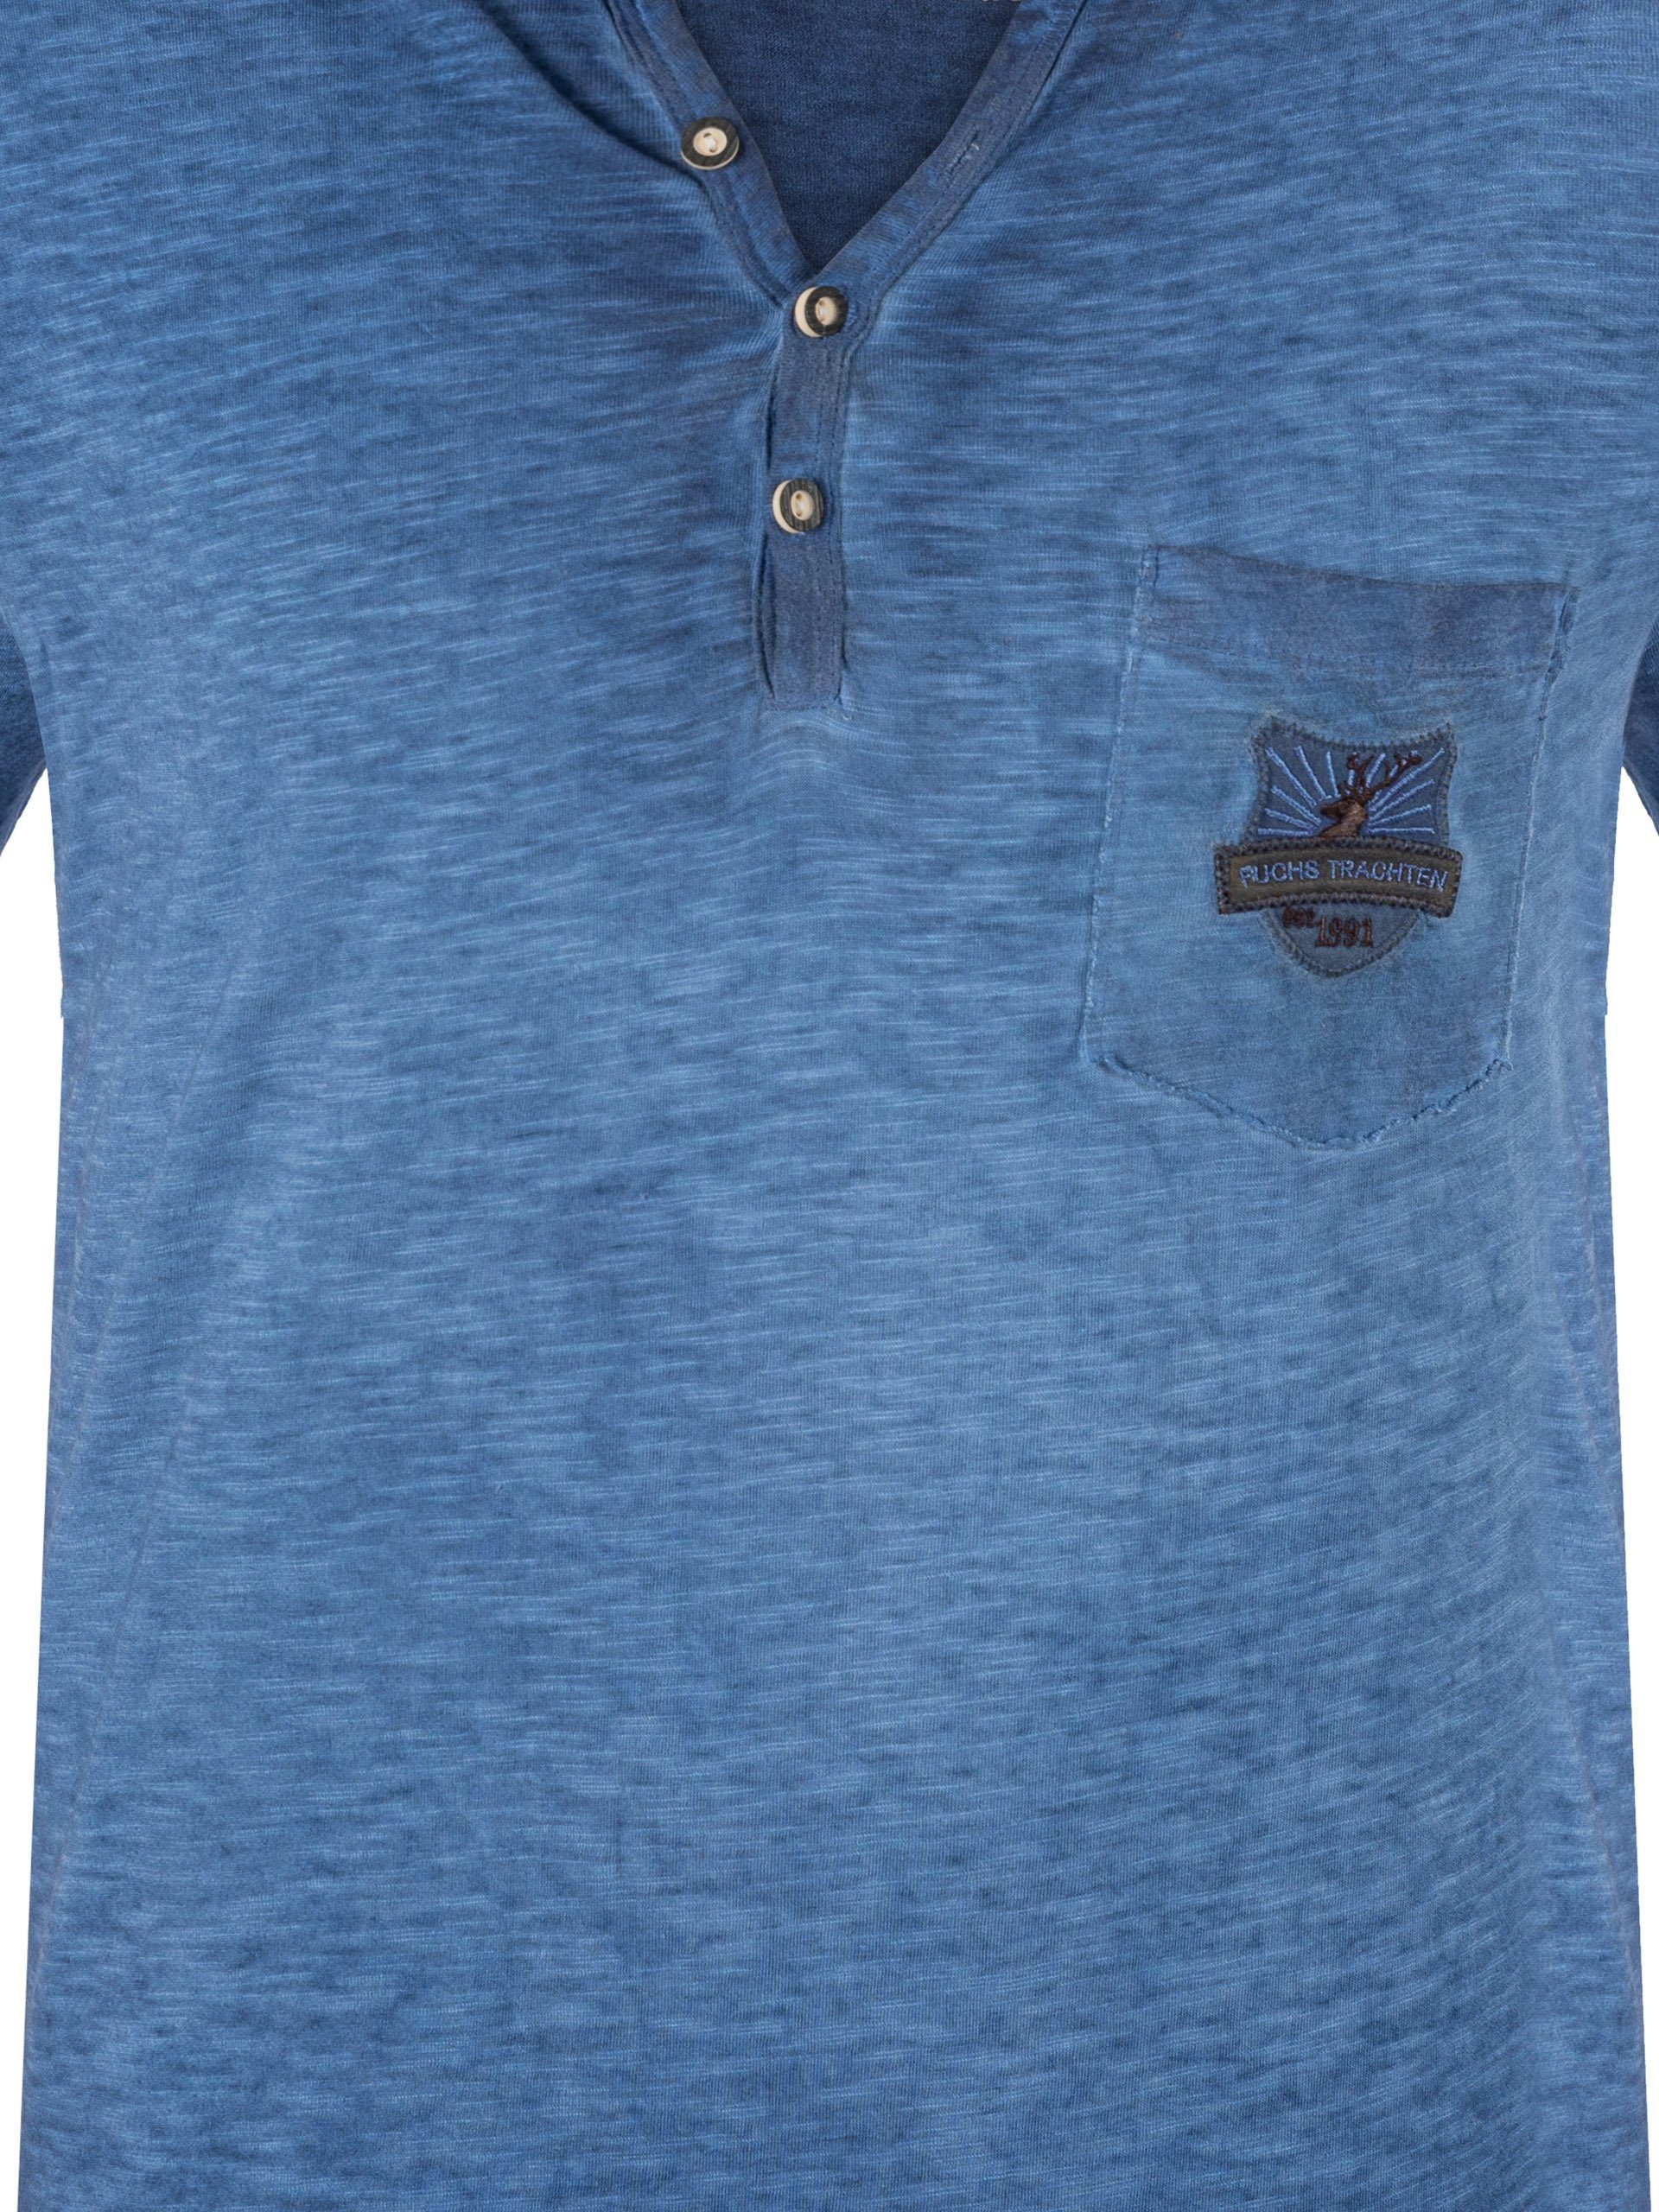 FUCHS T-Shirt Trachten Shirt blau Baumwolle aus Theo % 100